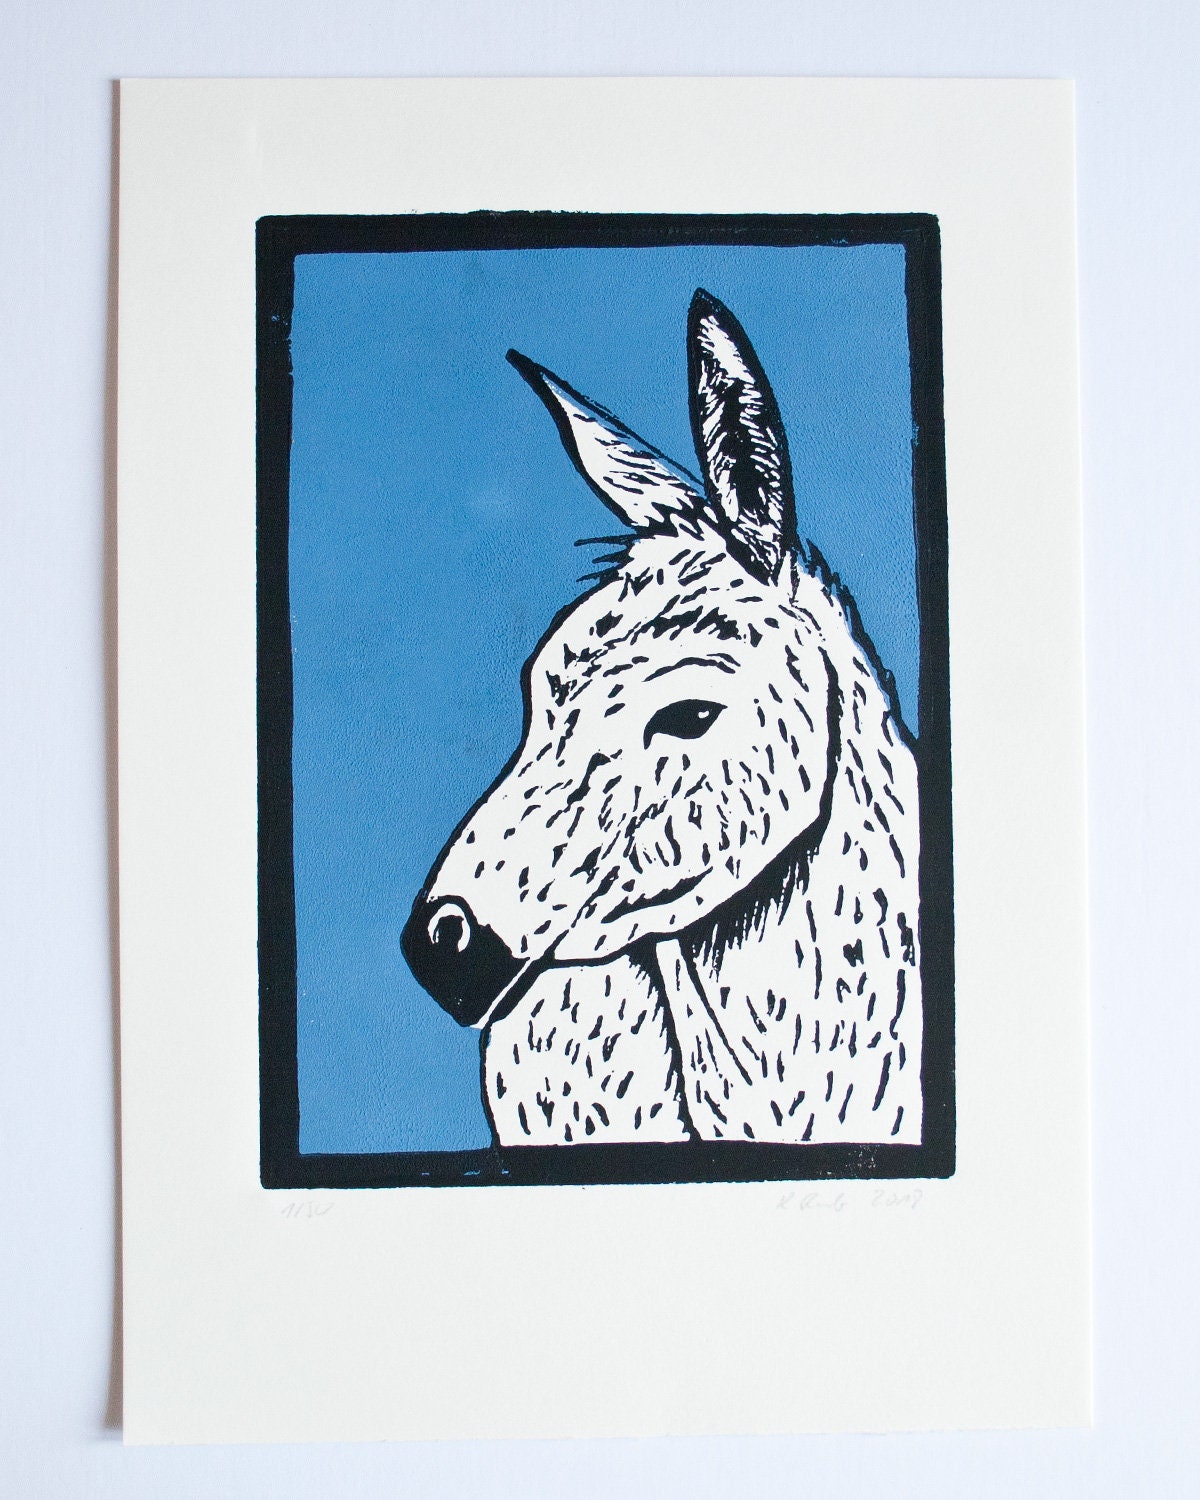 Linoldruck Esel, Original Grafik Tier Illustration